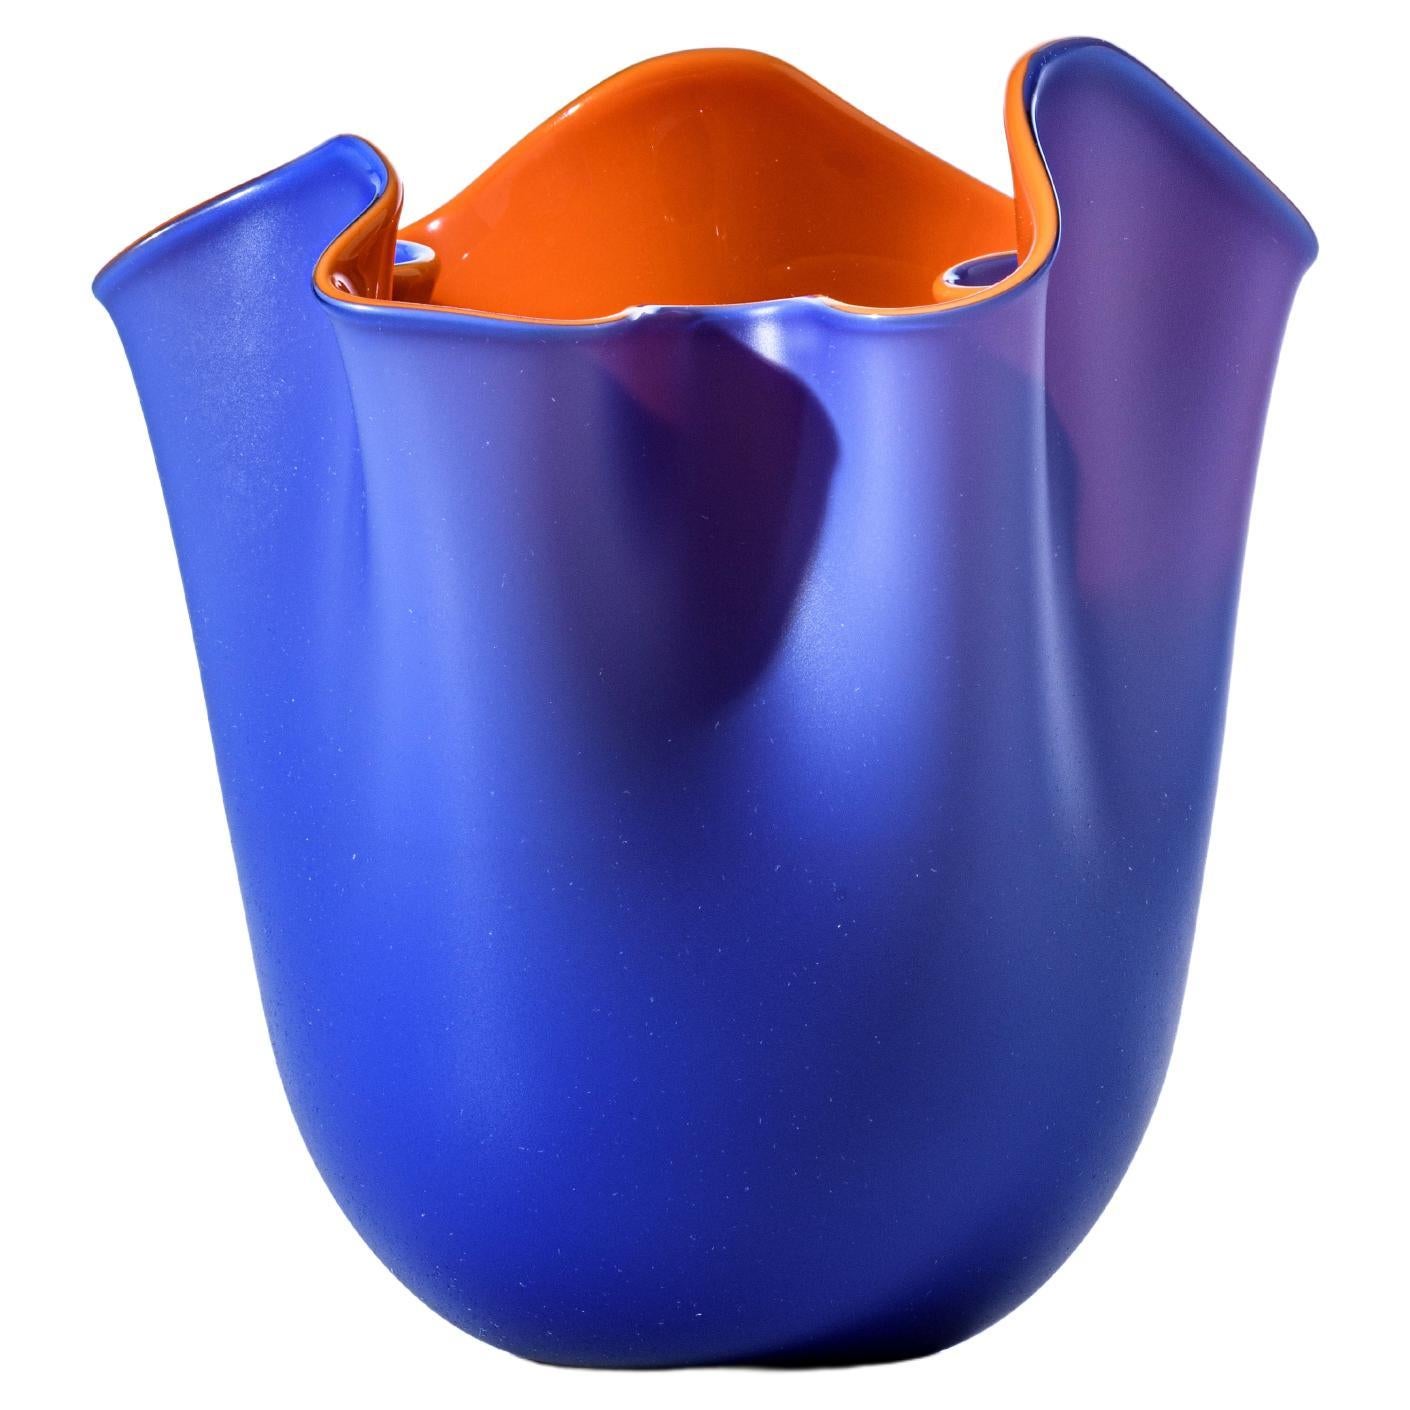 Venini Fazzoletto Bicolore sabbiato Small Vase in Horizon and Orange